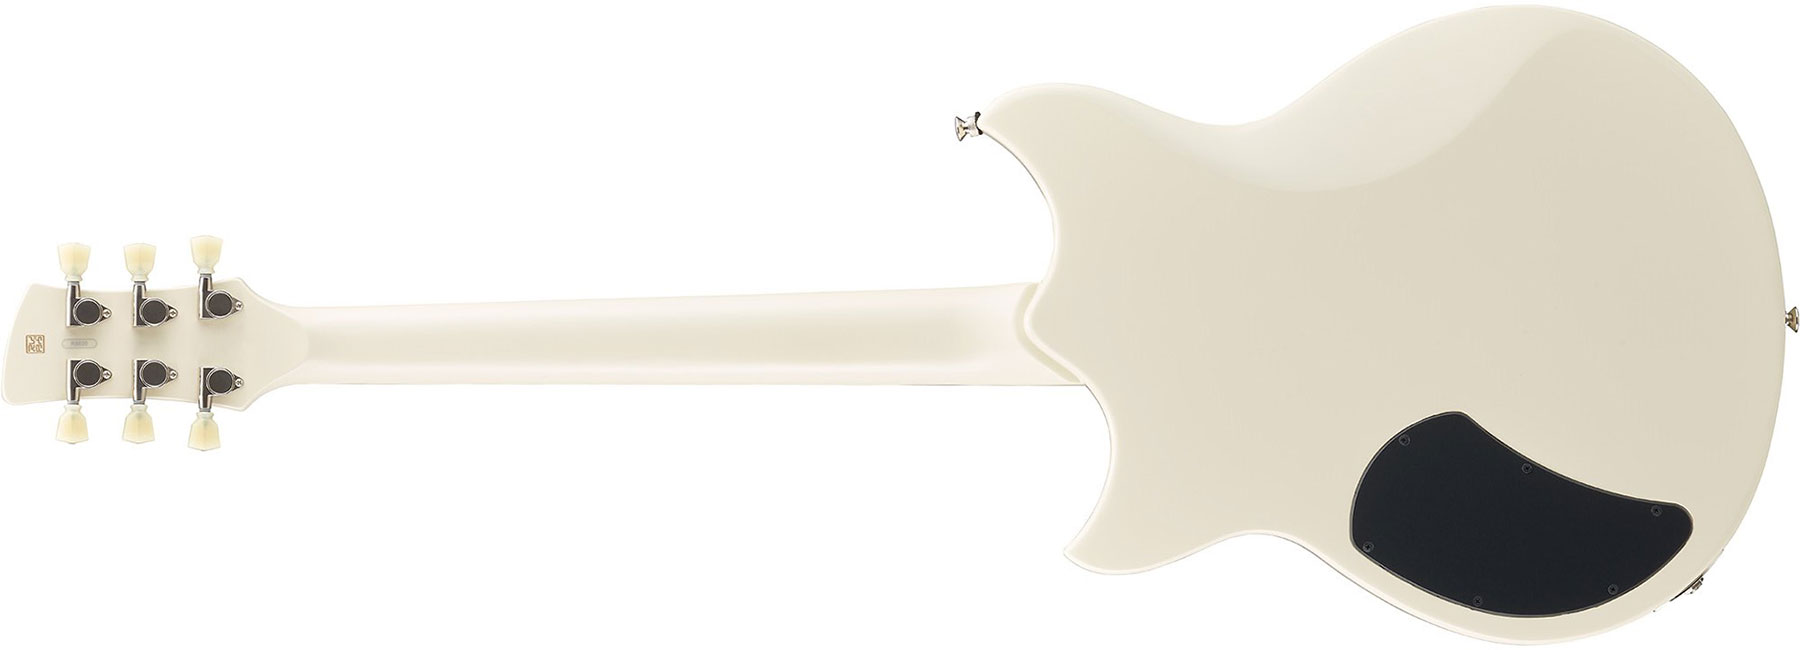 Solid elektrische gitaar Yamaha Element RSE20 - white wit